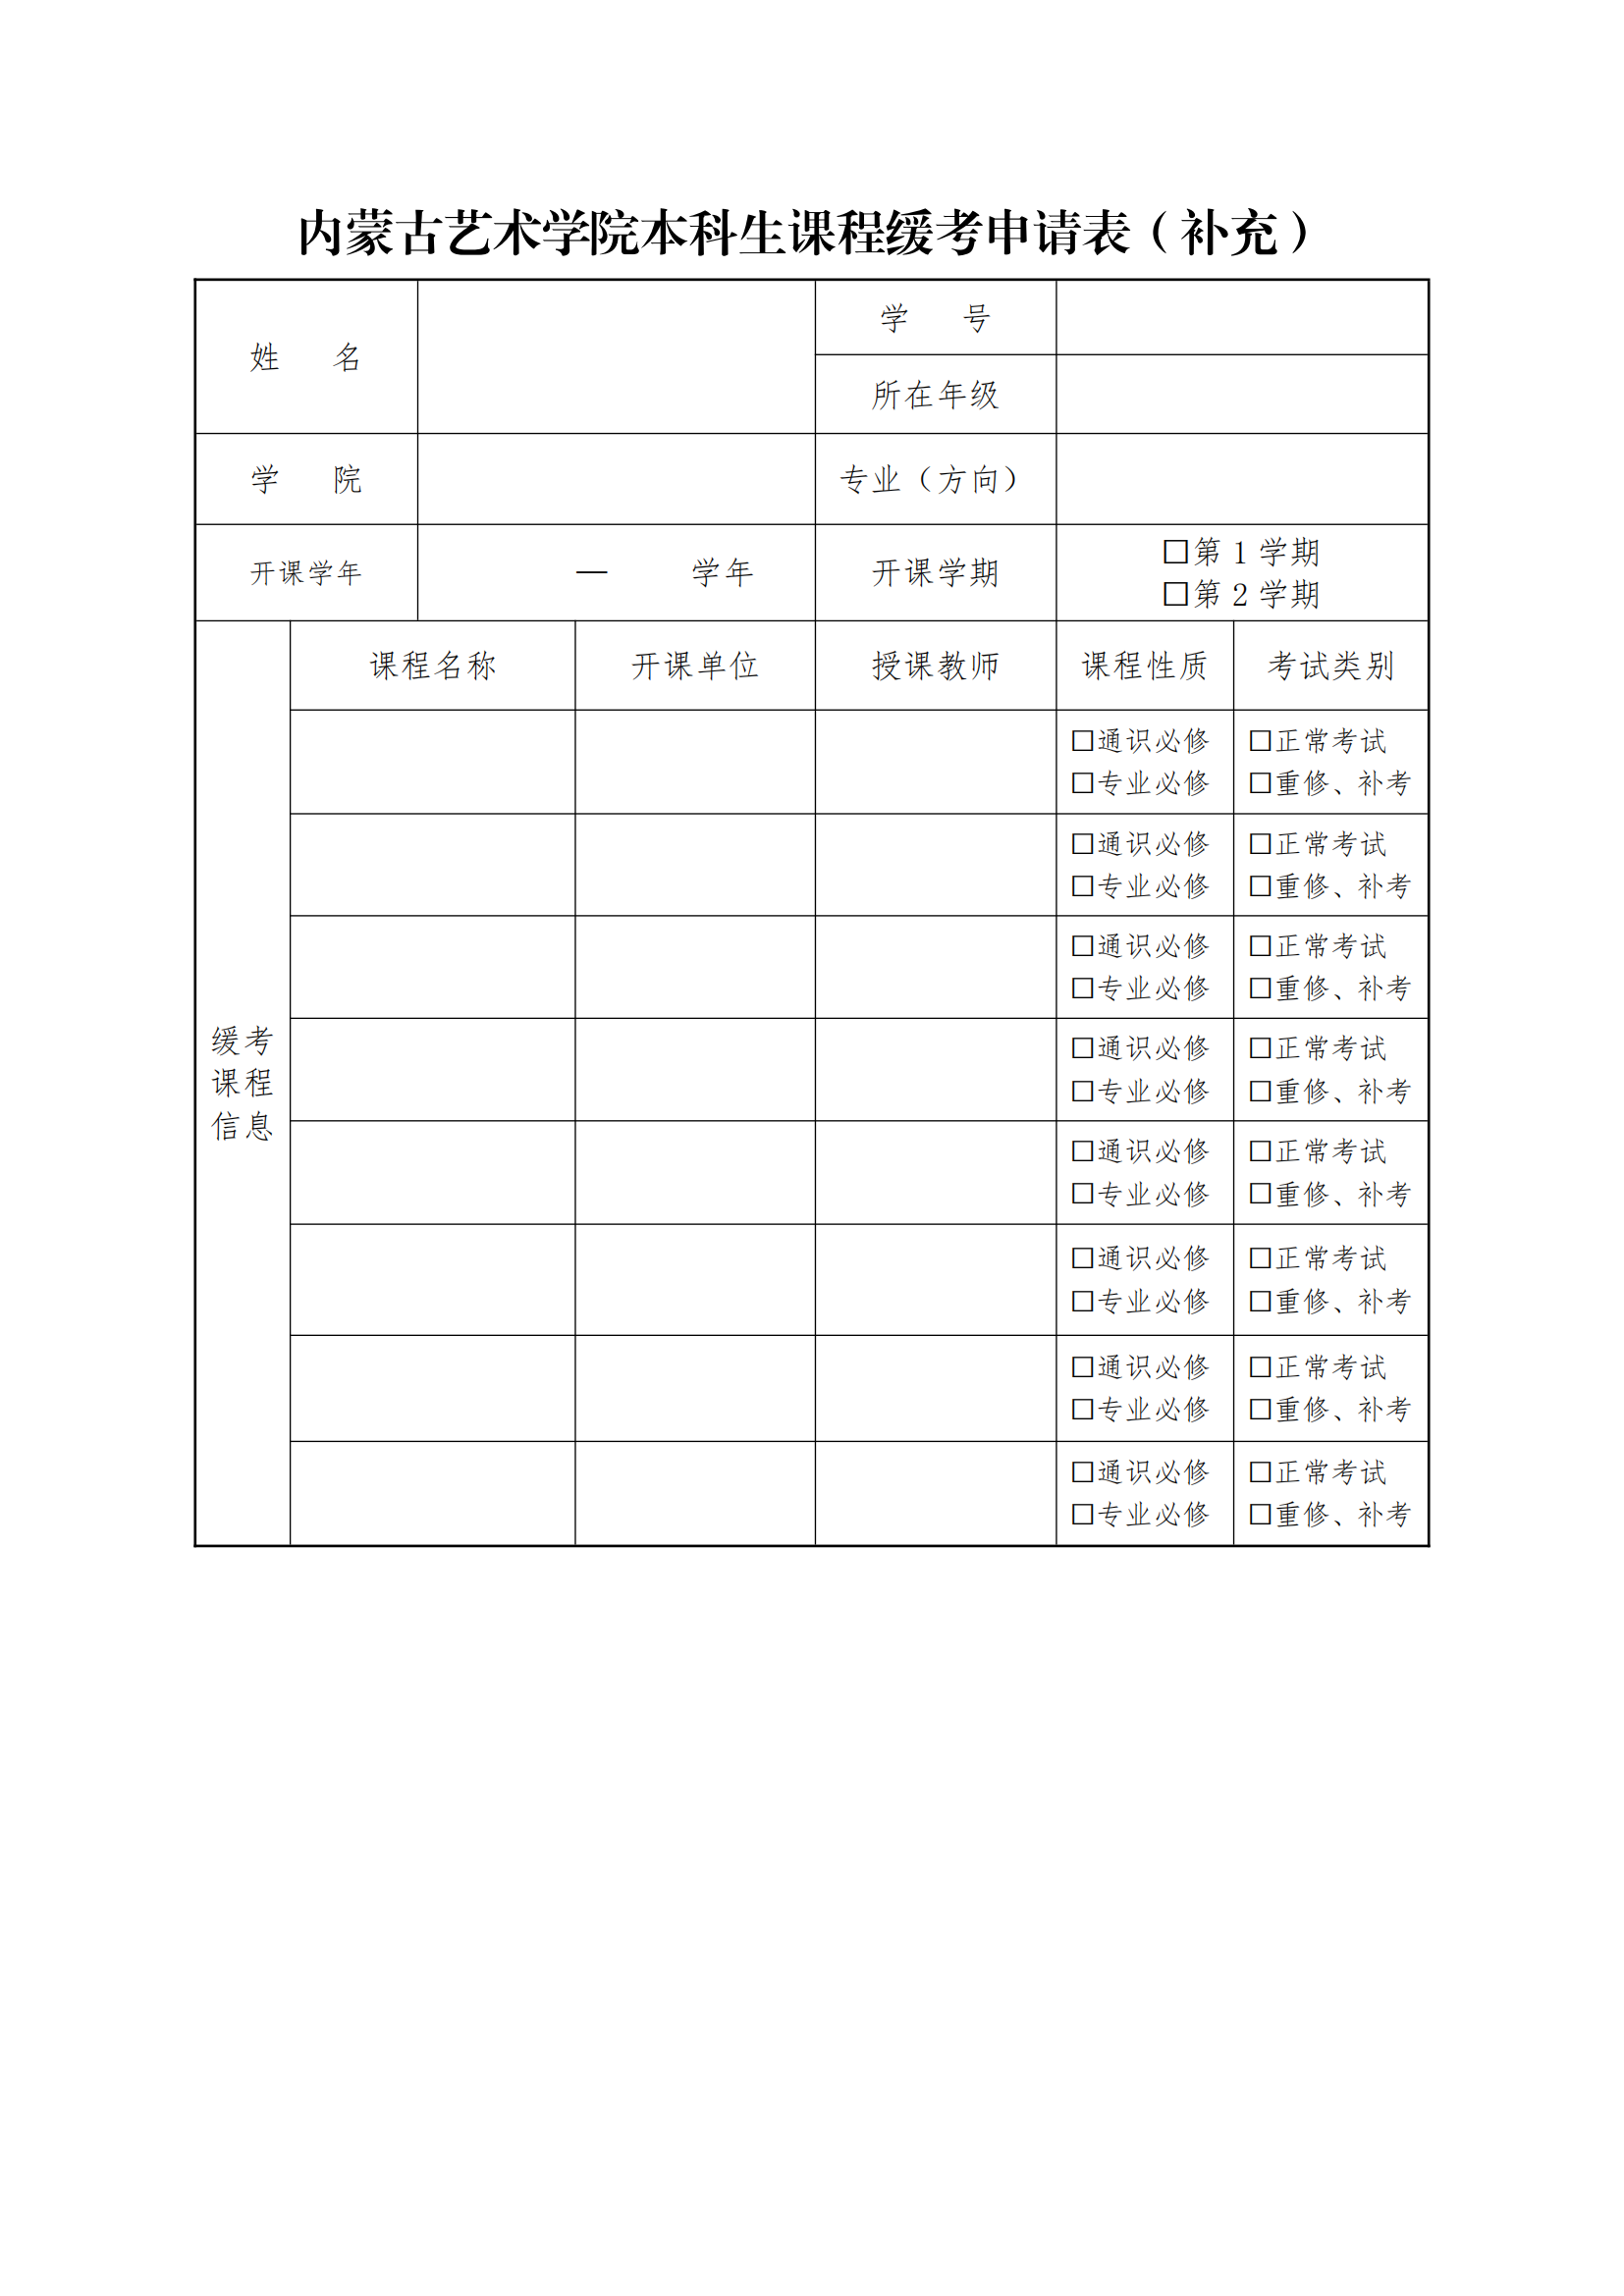 8.缓考工作流程与申请表_02.png